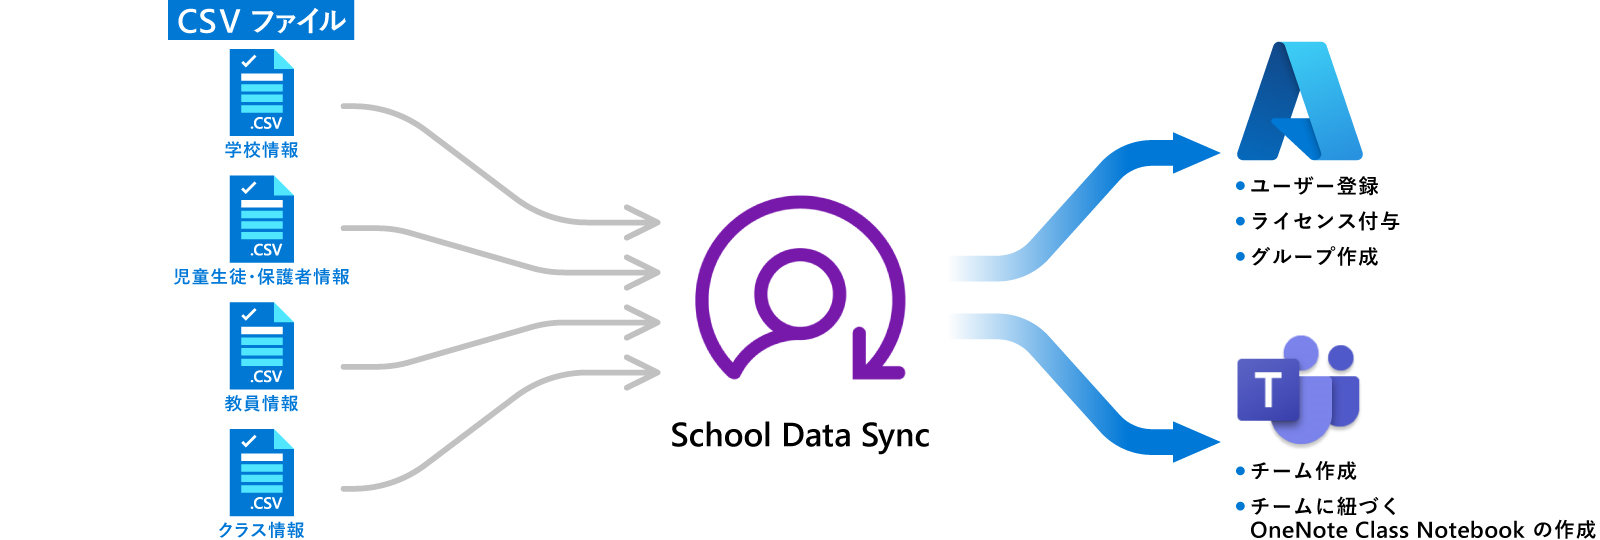 School Data Syncのフローイメージ図。CSVファイルはそれぞれ「学校情報」、「児童生徒・保護者情報」、「教員情報」、「クラス情報」とあり、これらがフロー中央にあるSchool Data Syncに集約される。その後、二通りに分かれ、一つはOffice 365アカウントによる「ユーザー登録」、「ライセンス付与」、「グループ作成」。もう一つはTeamsアカウントによる「チーム作成」、「チームに紐づくOneNote Class Notebookの作成」。